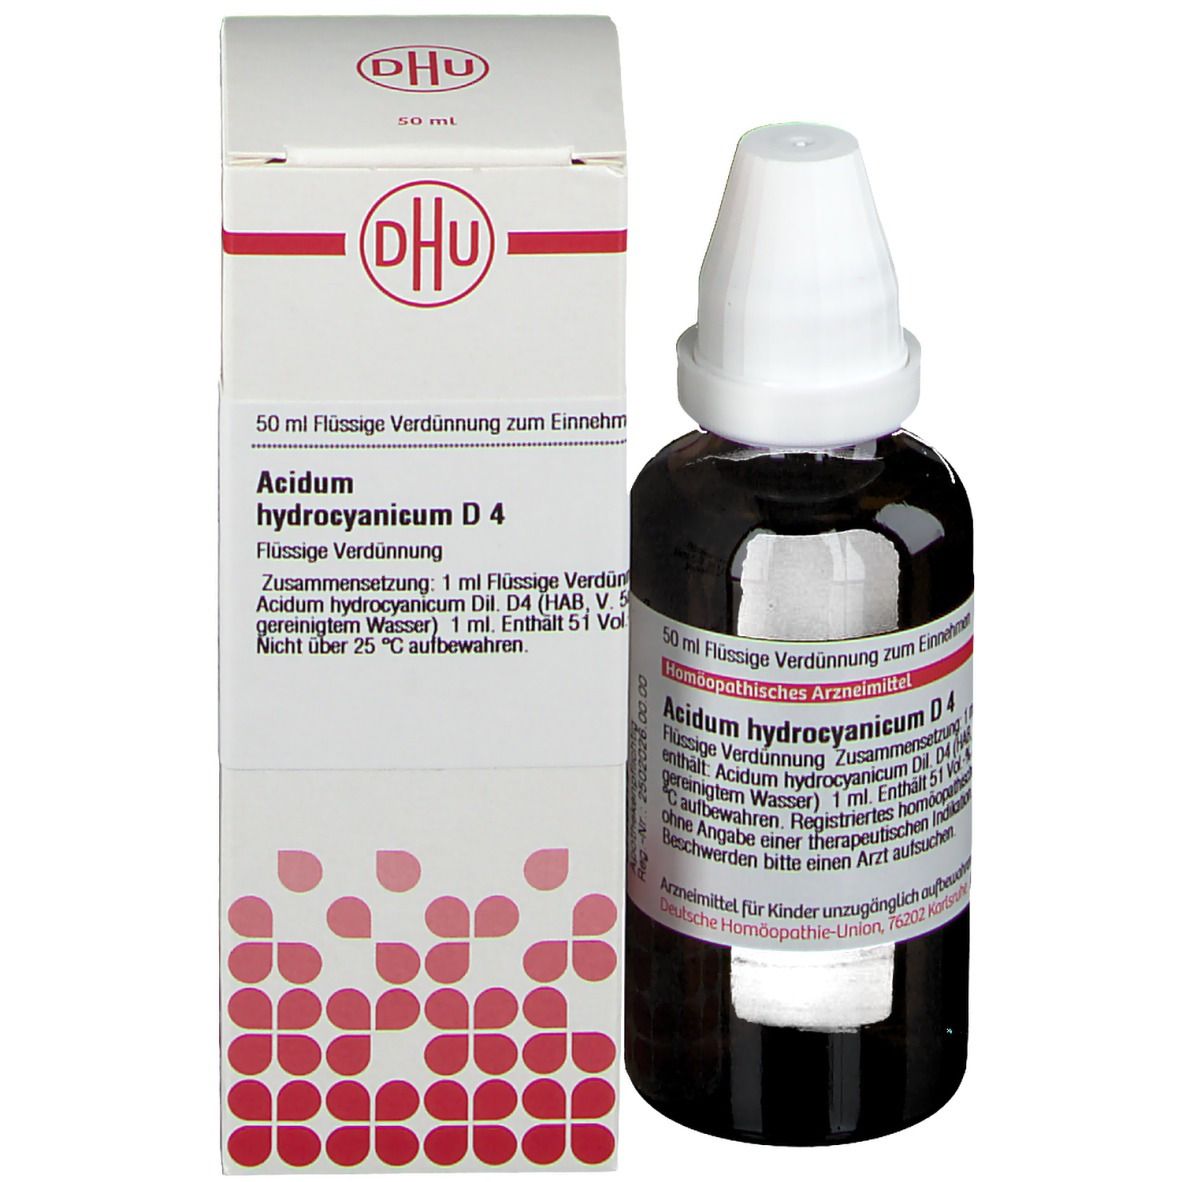 DHU Acidum Hydrocyanicum D4